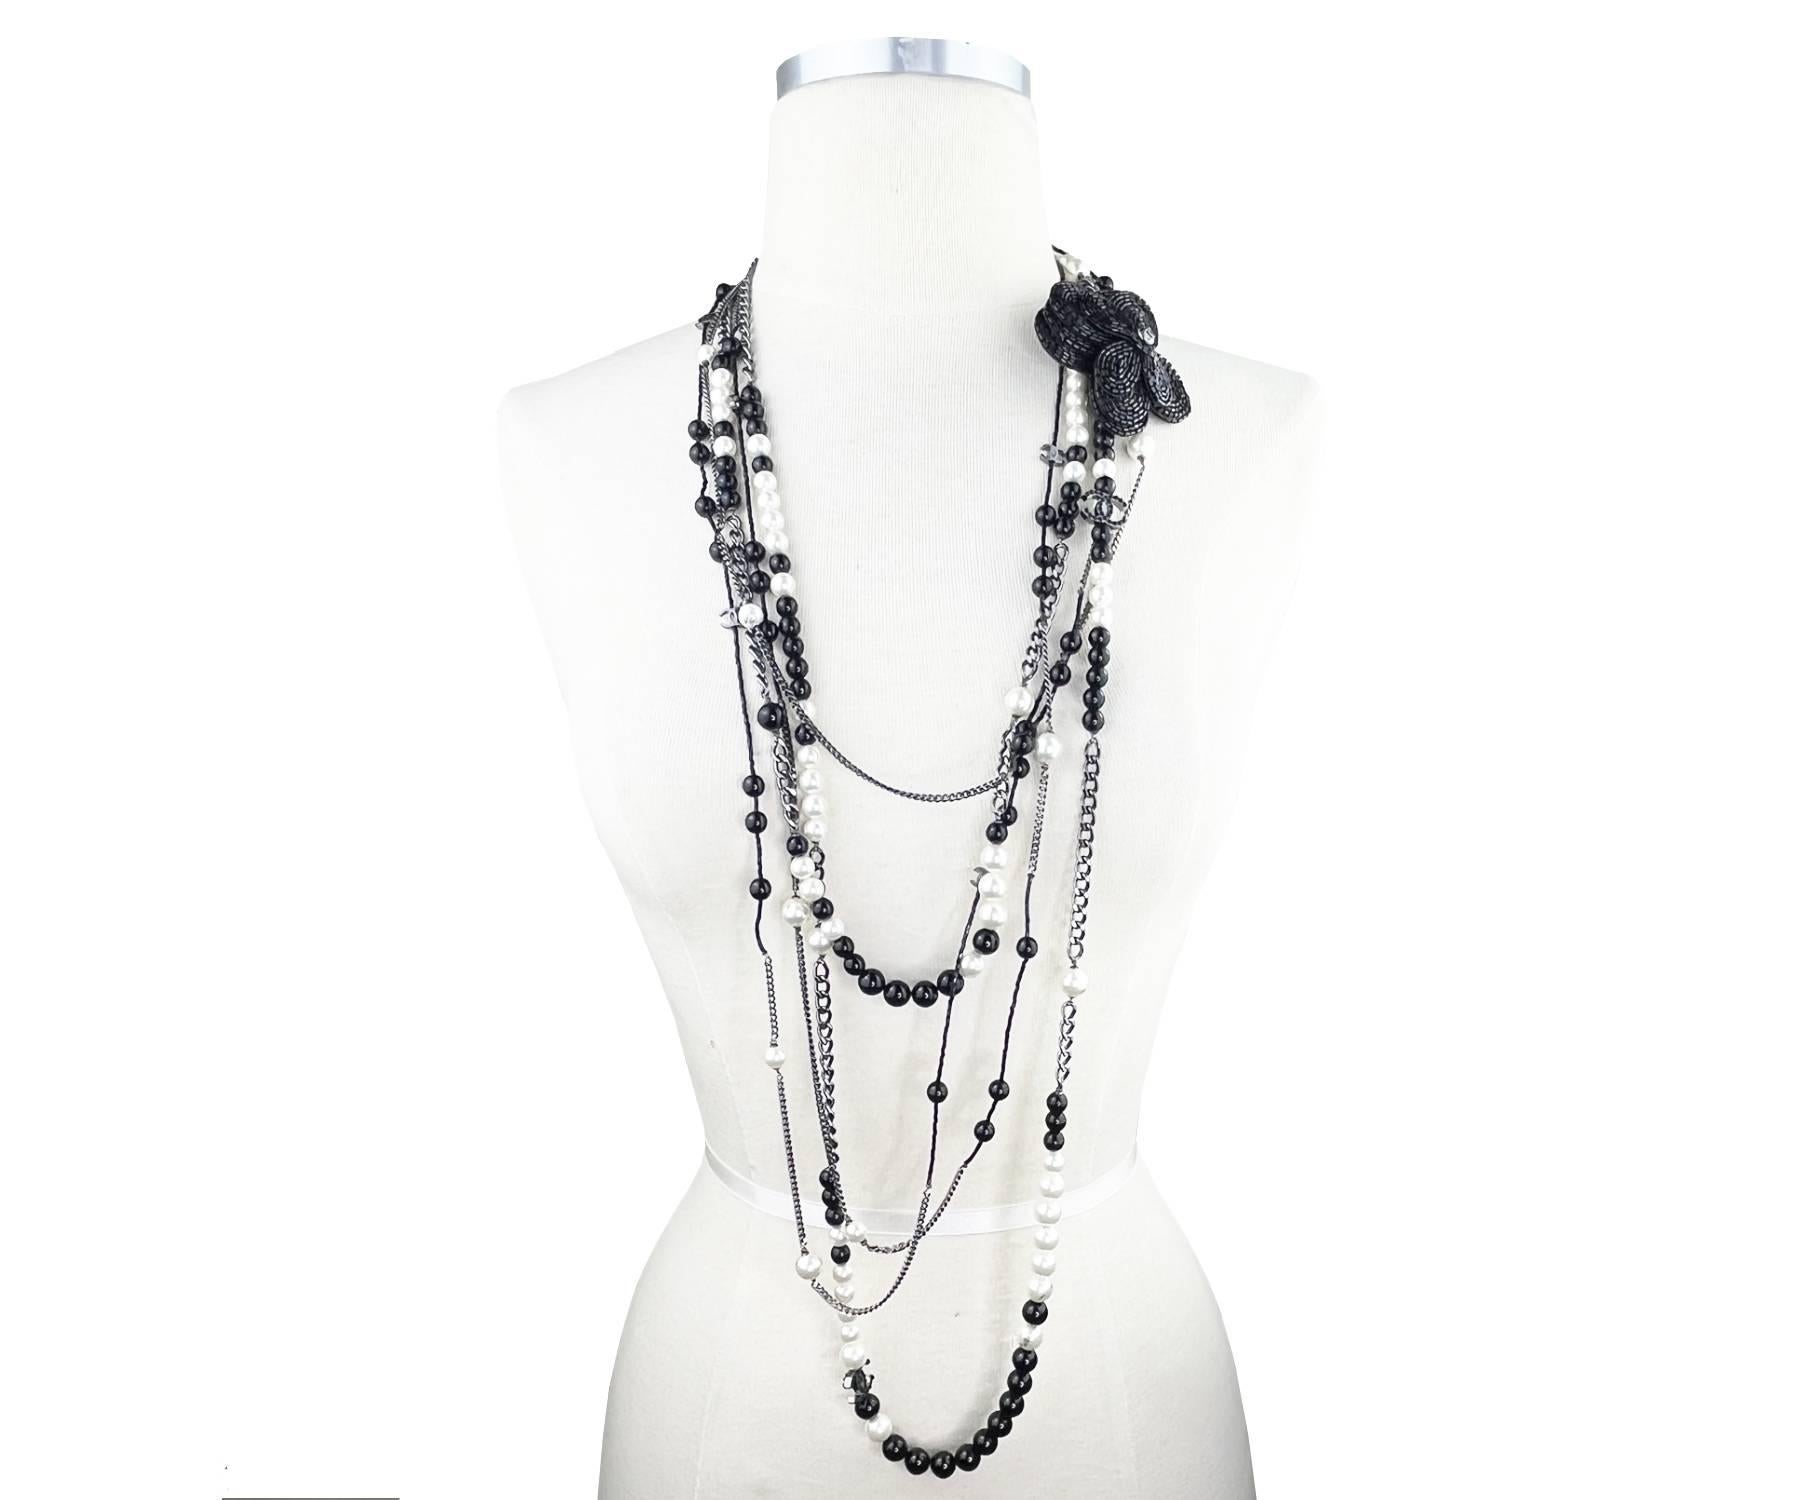 Chanel - Collier 5 rangs de perles noires CC - Fleur en forme de pin - Perle noire

*Marqué 03
*Fabriqué en France
*Vient avec la boîte d'origine

-Approximativement 46″ de long
-La broche fleur perlée mesure environ 3″ x 3″. On ne peut pas